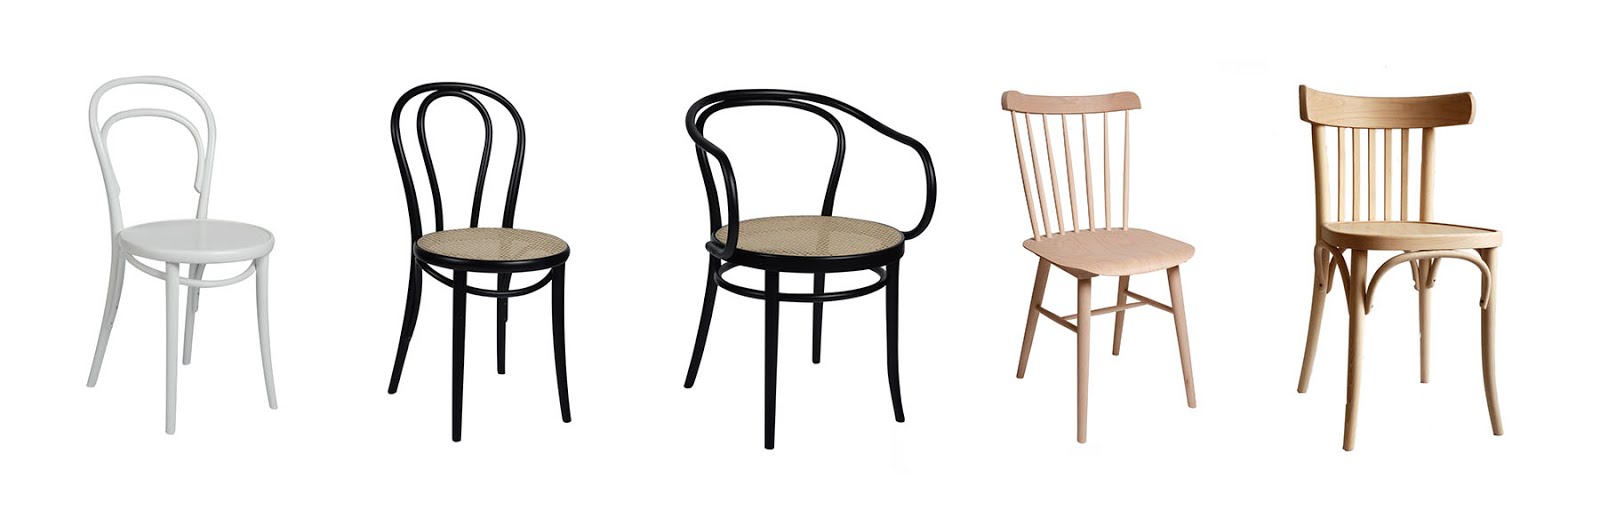 Dille & kamille, thonet, stoelen, chairs, gebogen, eenvoud, nieuw, betaalbaar, duurzaam